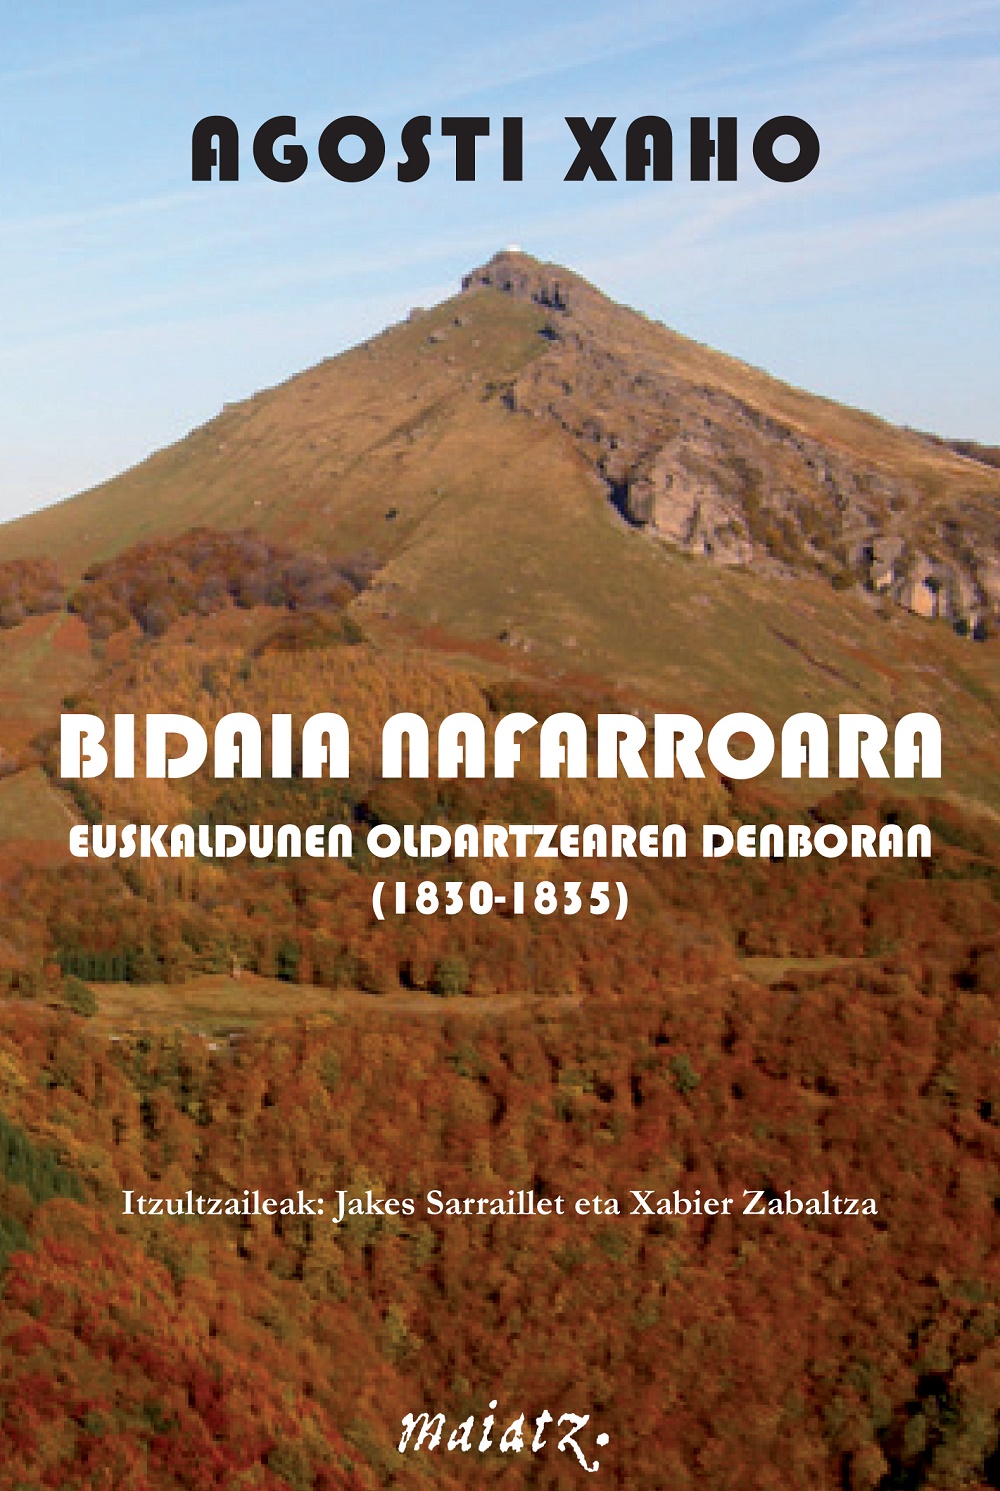 Bidaia Nafarroara euskaldunen oldartzearen denboran (Paperback, Euskara language, 2021, Maiatz argitaletxea)